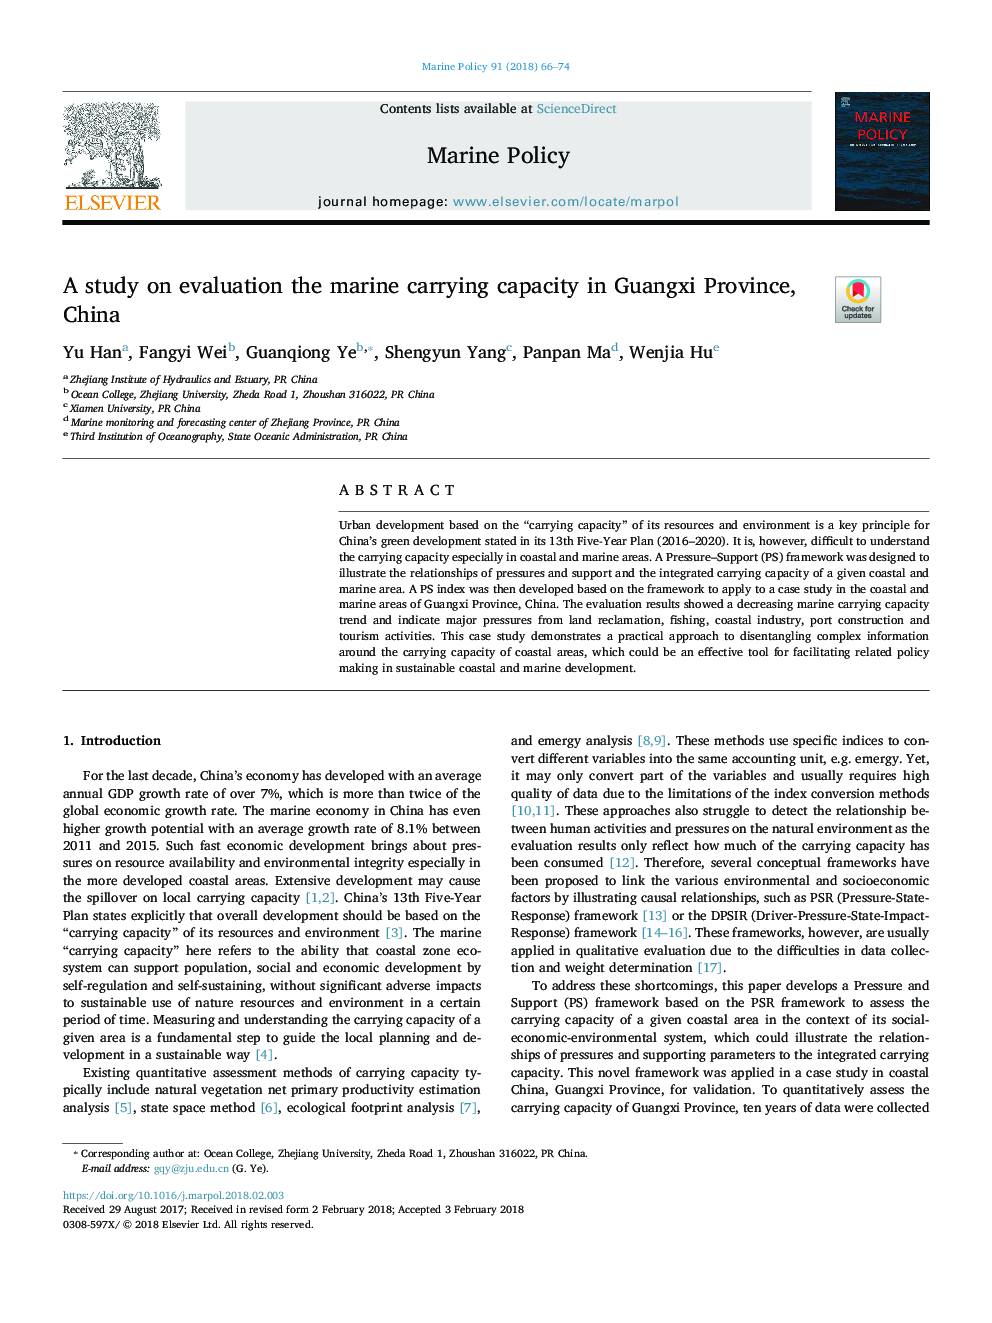 یک مطالعه در مورد ارزیابی ظرفیت حمل دریایی در استان گوانگشیو چین 